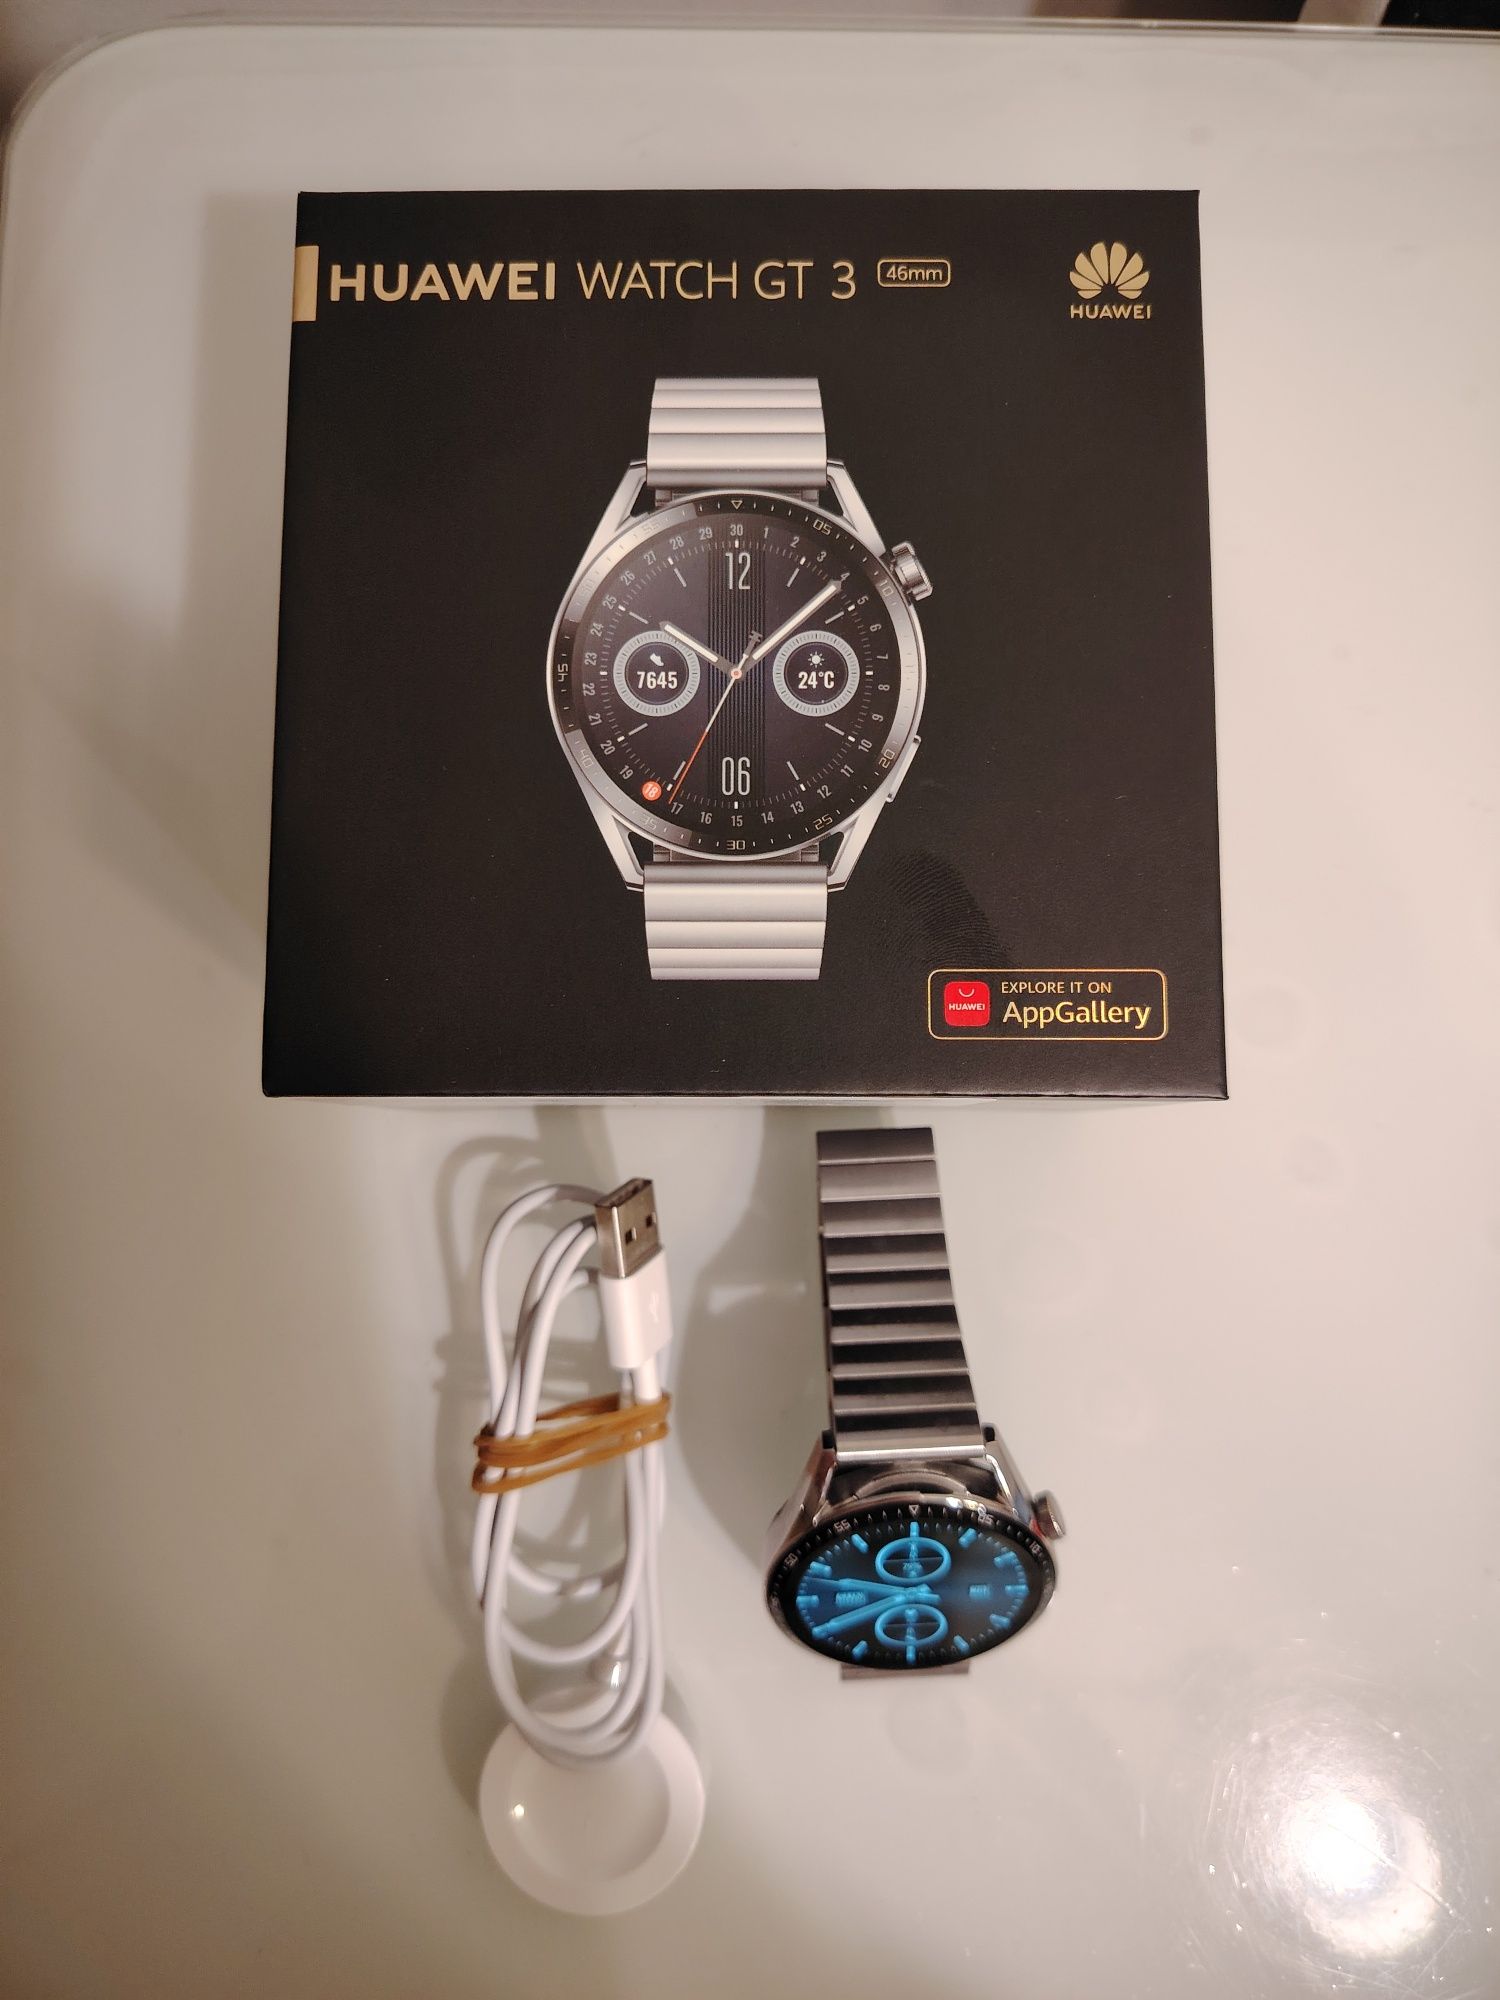 Smartwatch Huawei Watch GT3